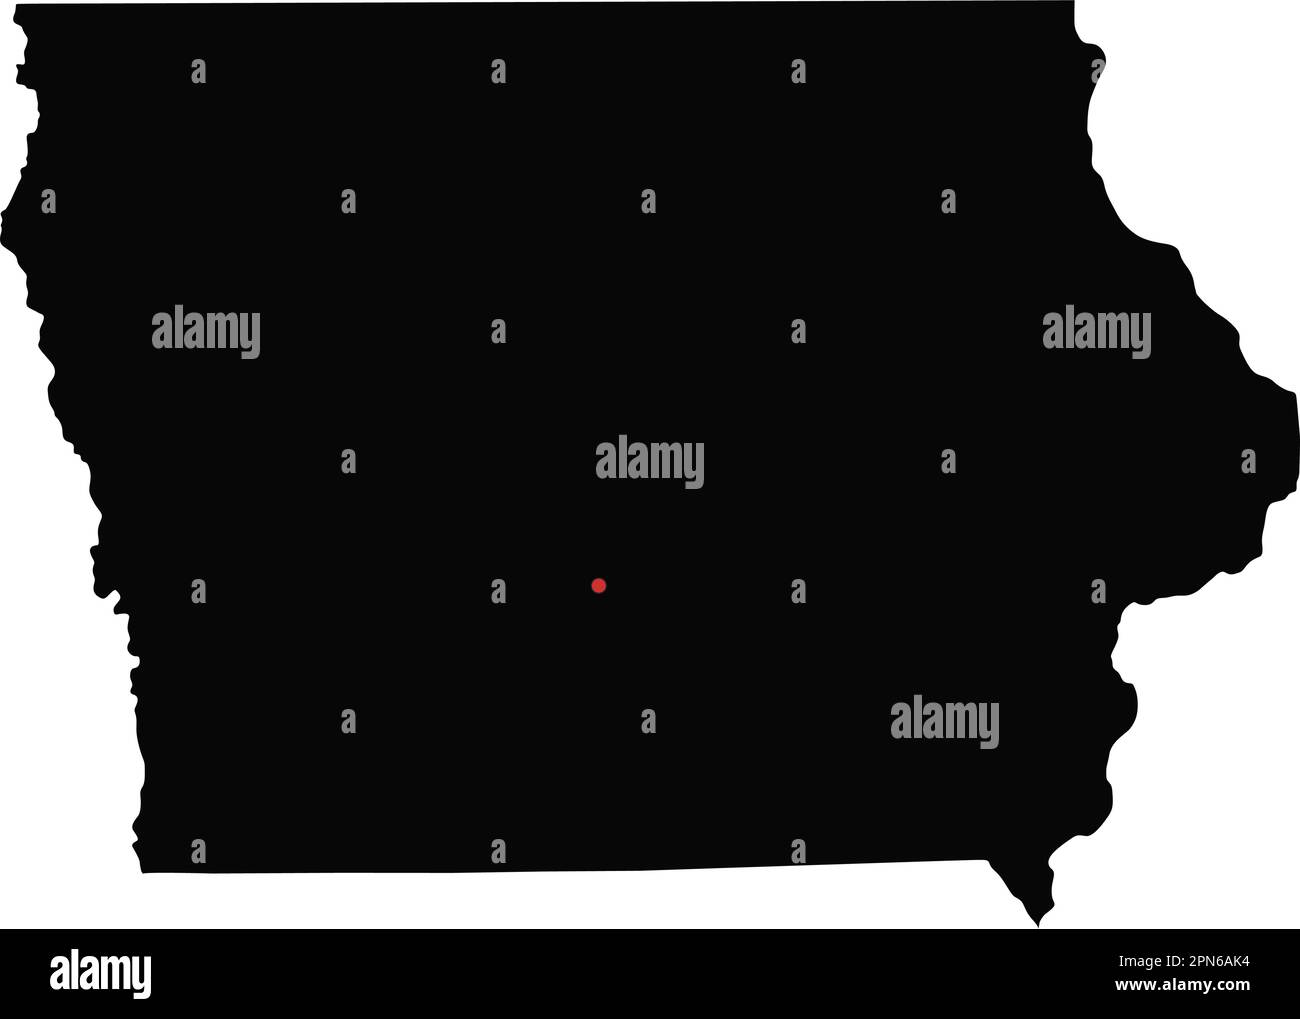 Mappa della silhouette dell'Iowa molto dettagliata. Illustrazione Vettoriale